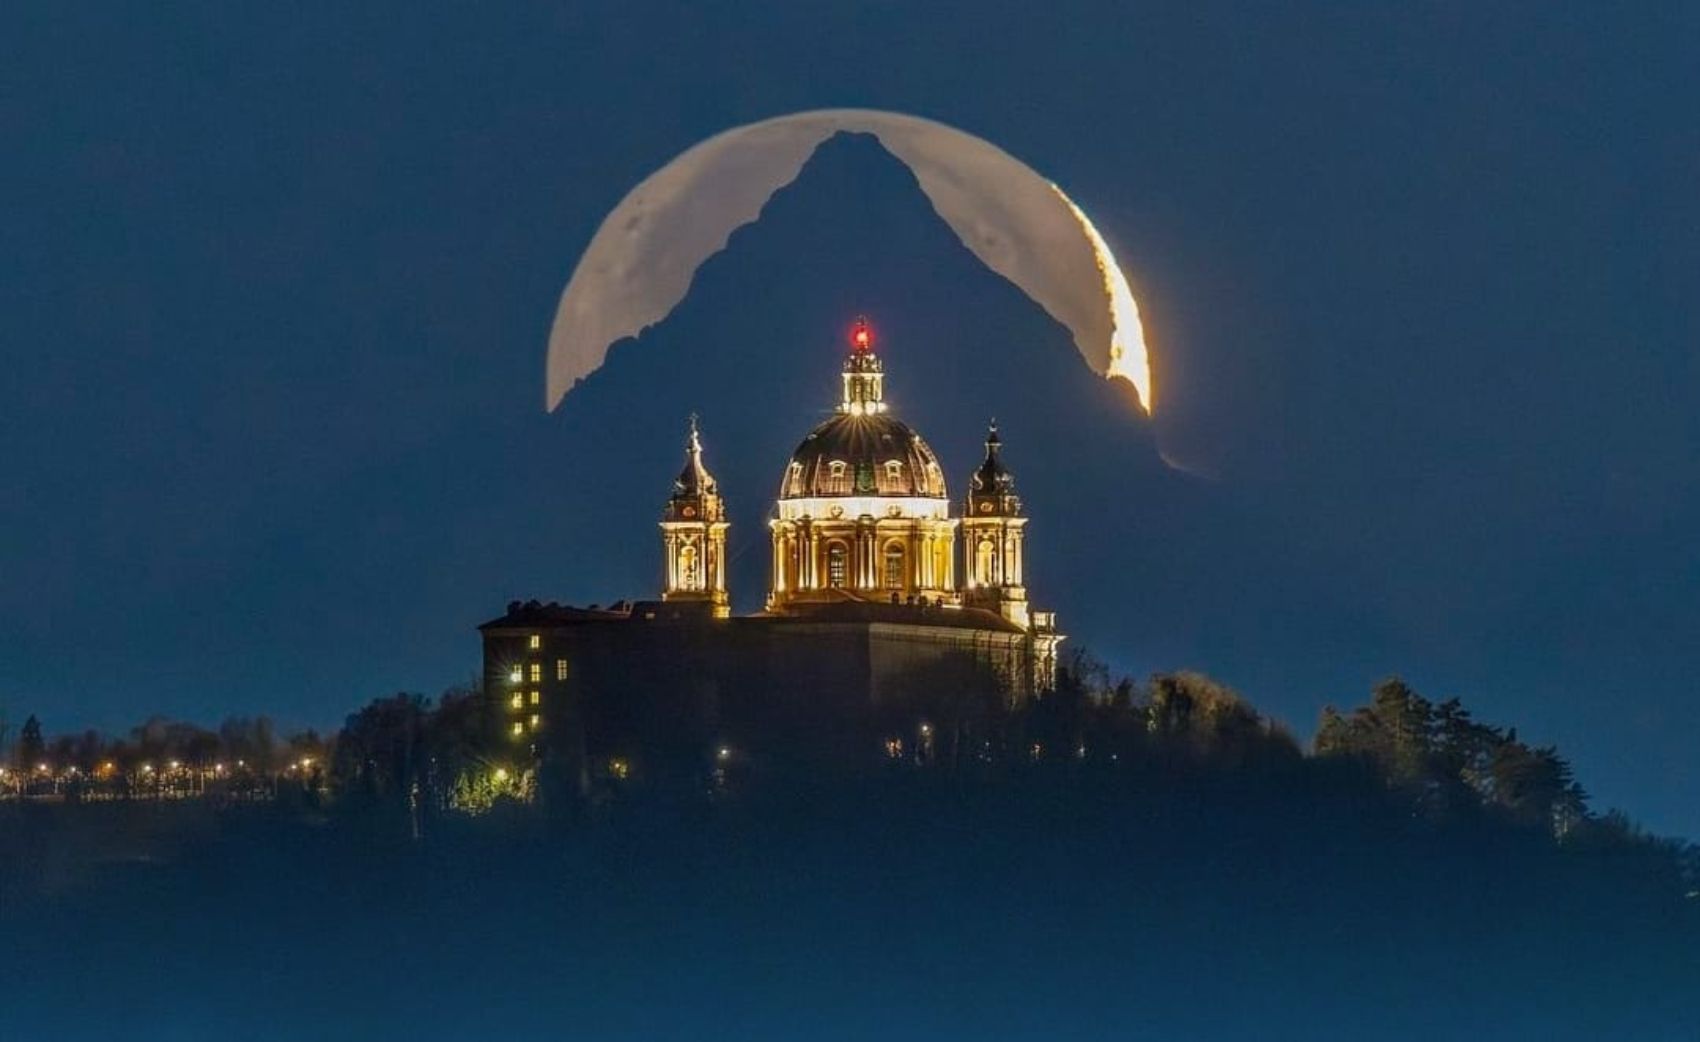 Fotógrafo italiano recibe reconocimiento de la Nasa por extraordinaria fotografía de la luna